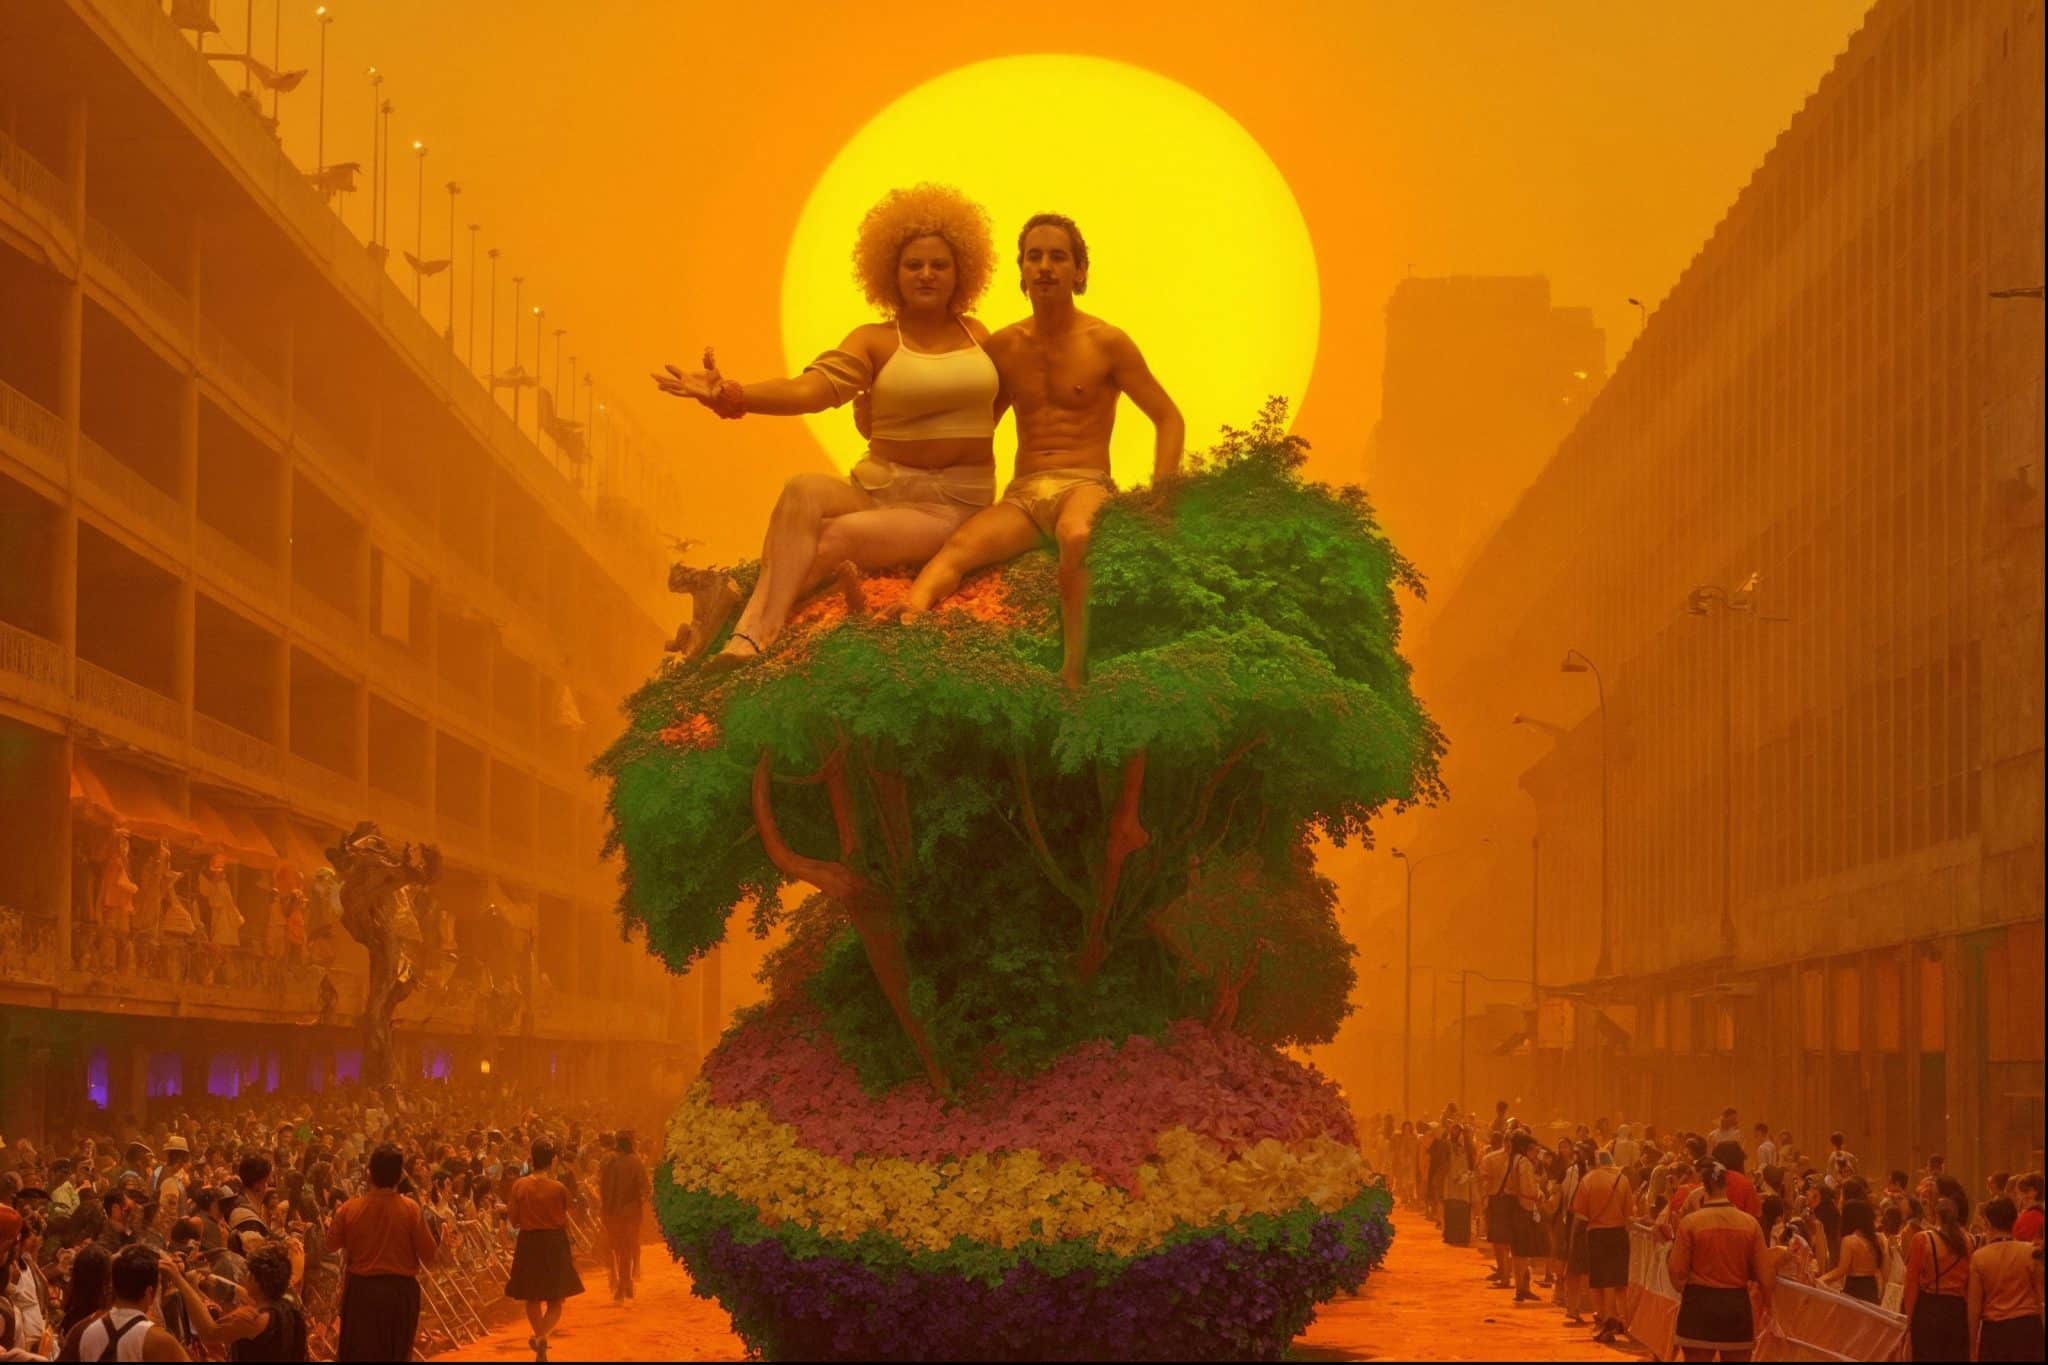 revistaprosaversoearte.com - 'Carnaval Futuro' estreia em maio no Centro Cultural São Paulo